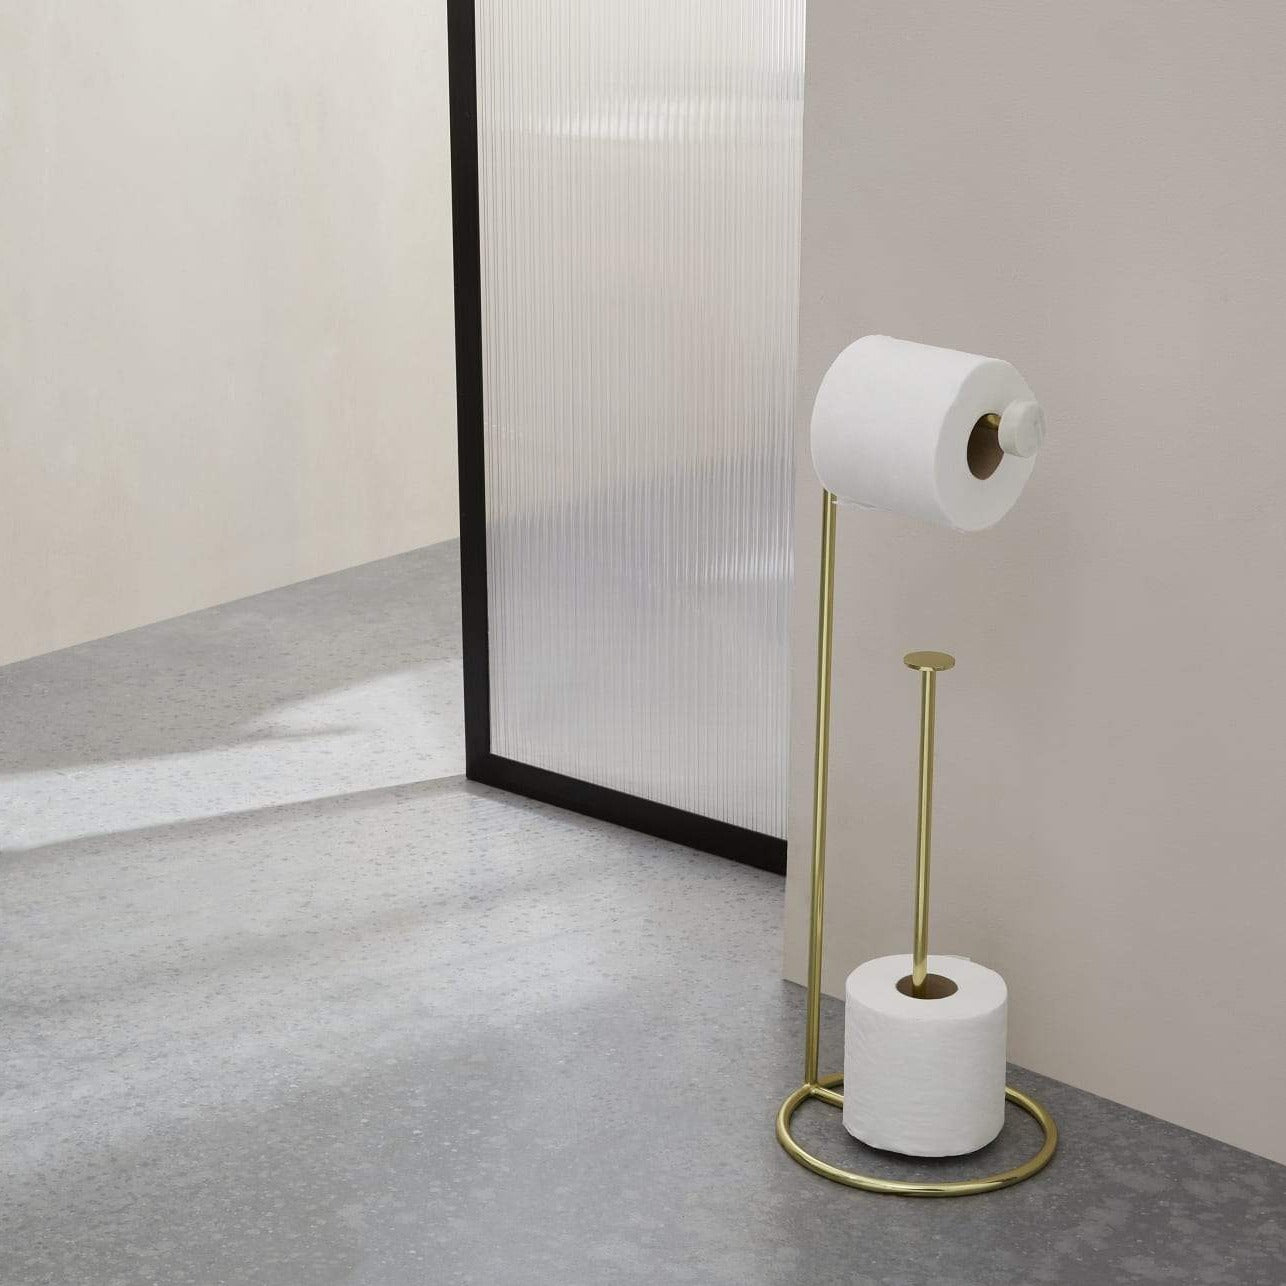 Porte papier WC sur pied 2in1, blanc - dipius SA